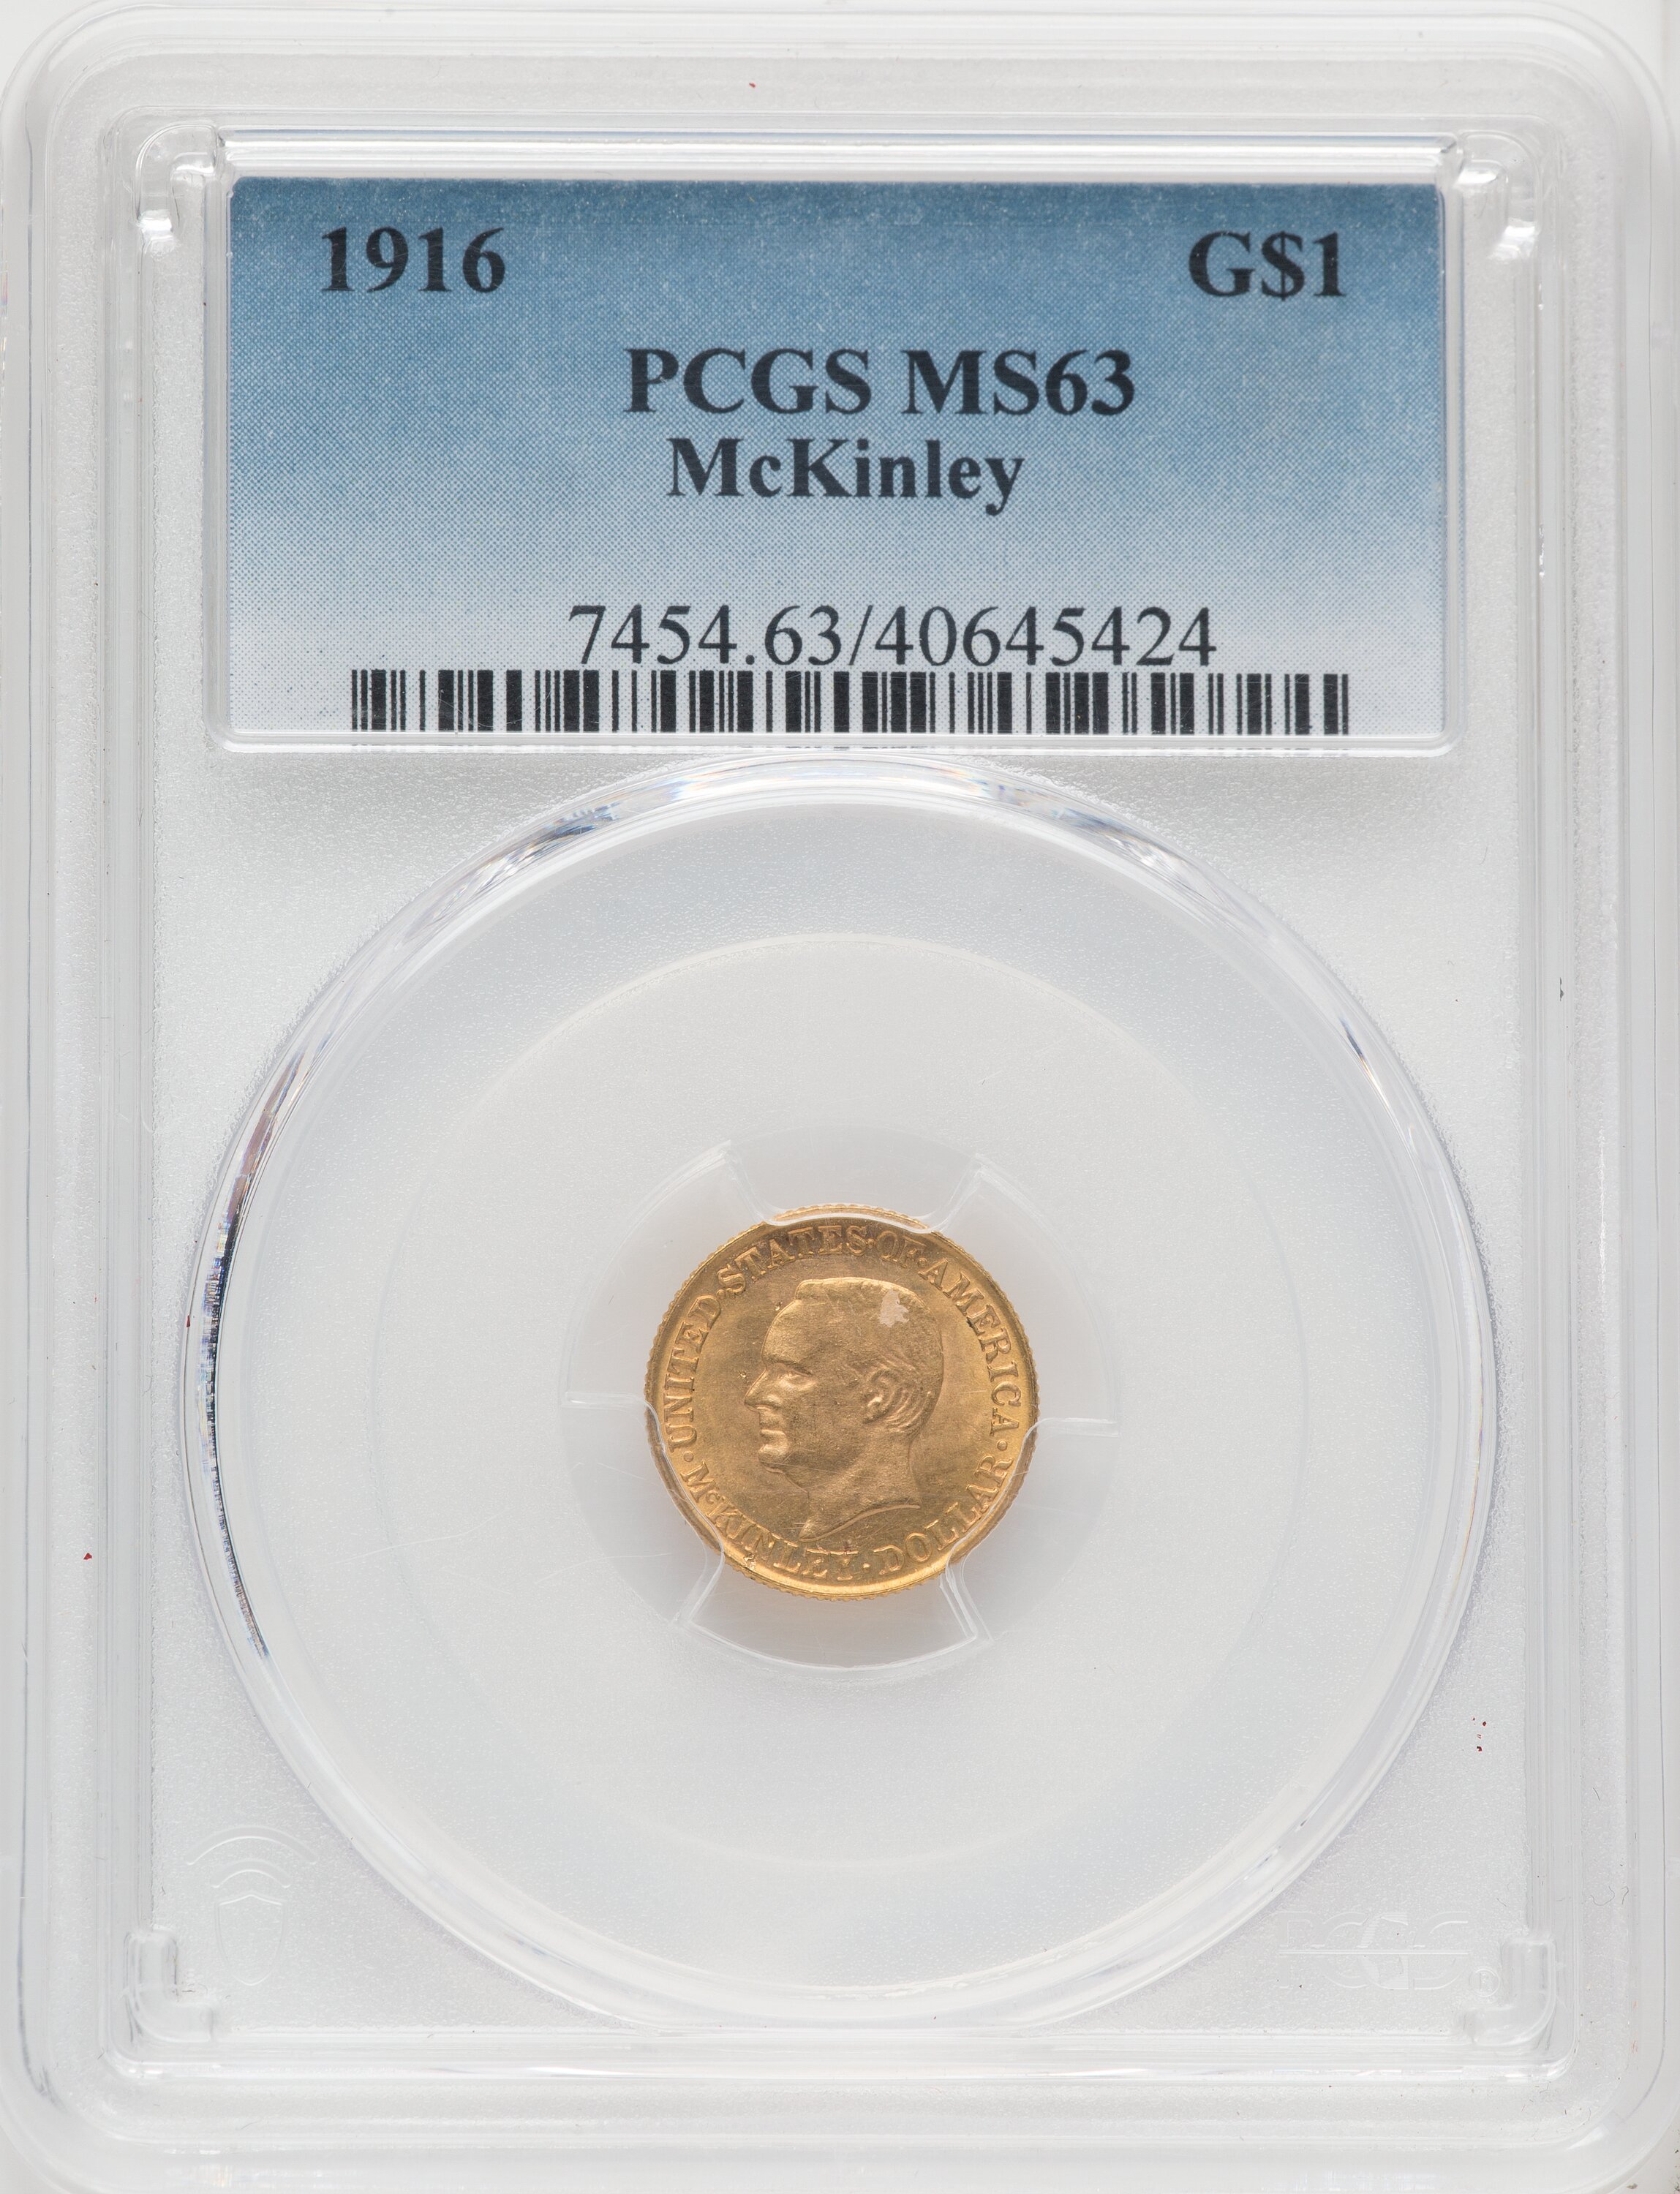 1916 G$1 McKinley 63 PCGS